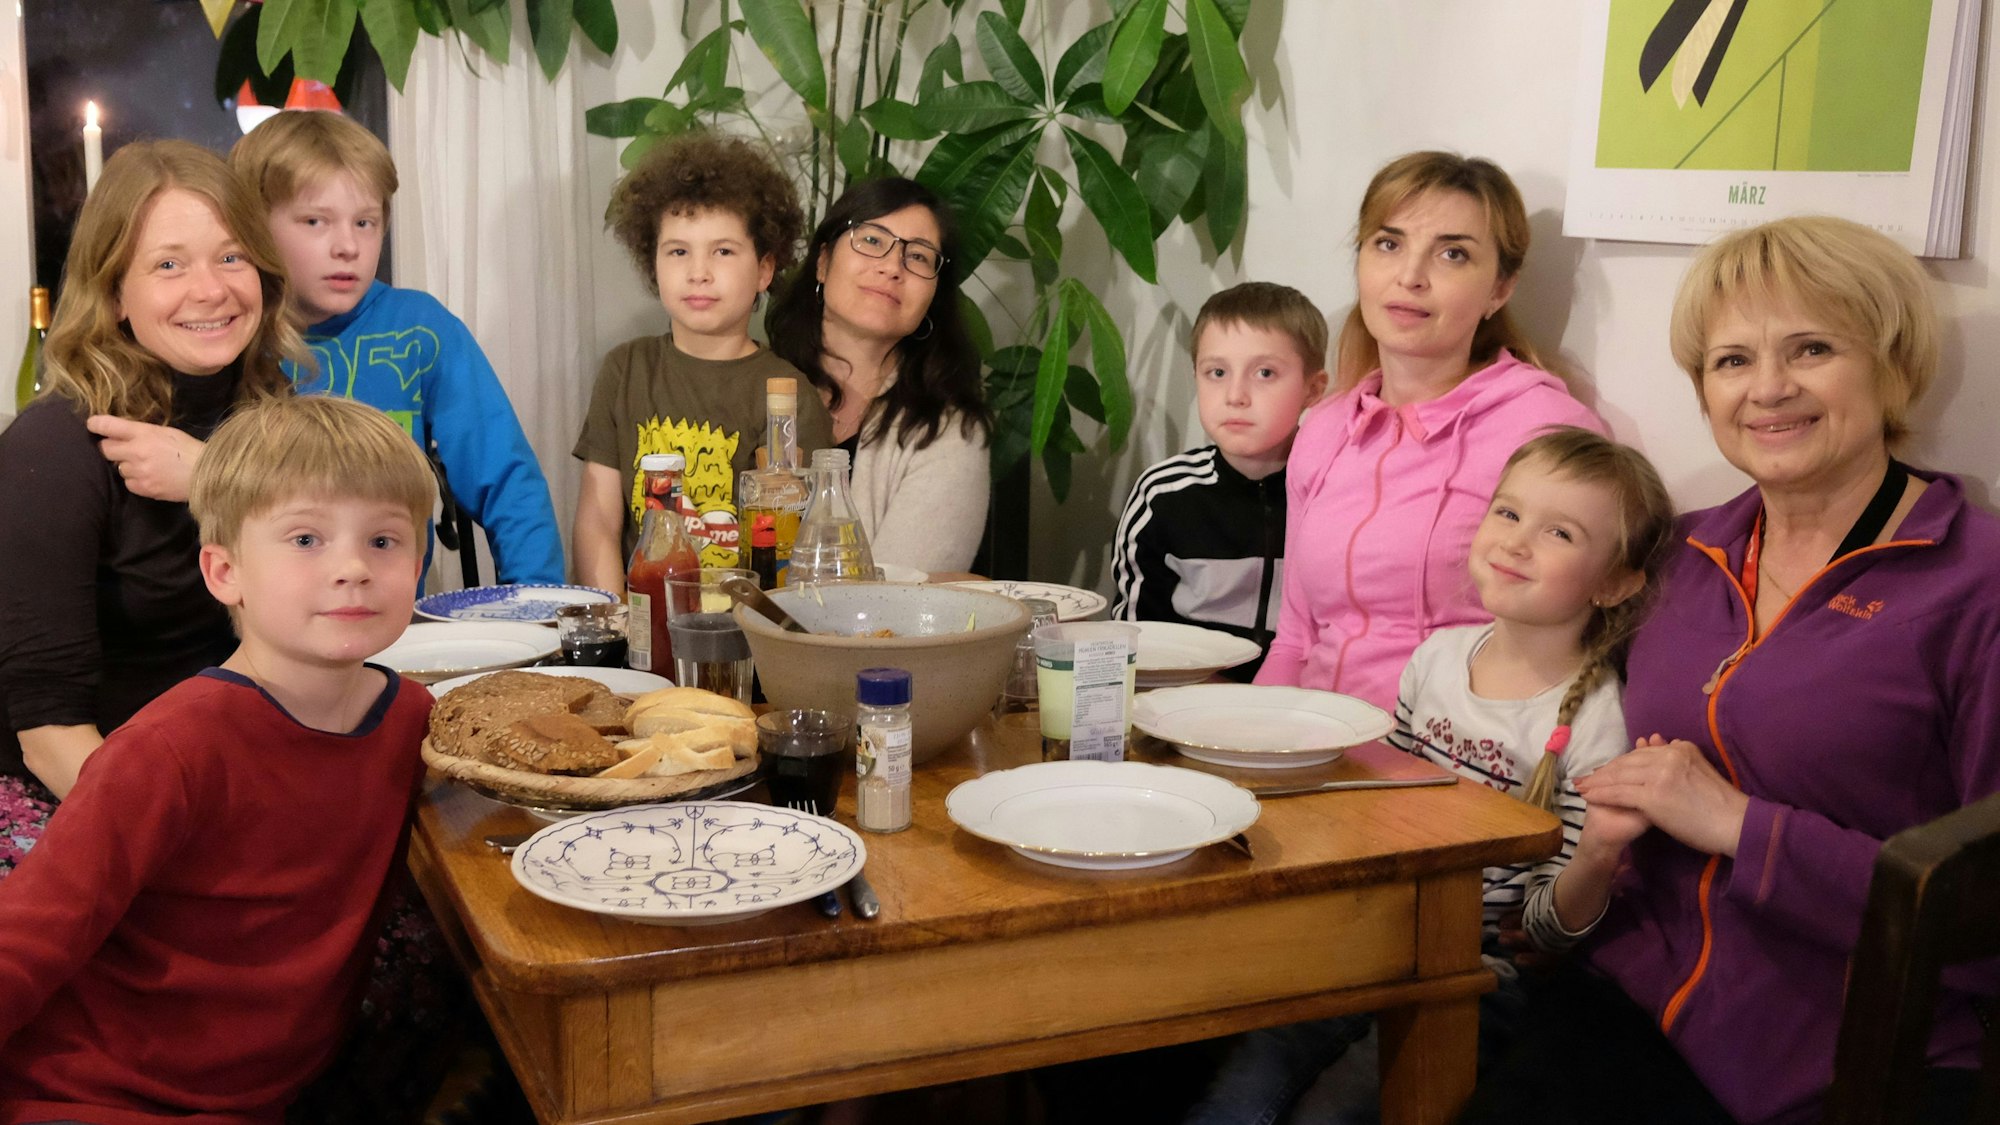 Eine ukrainische Familie zu Gast bei einer Familie in Düsseldorf.